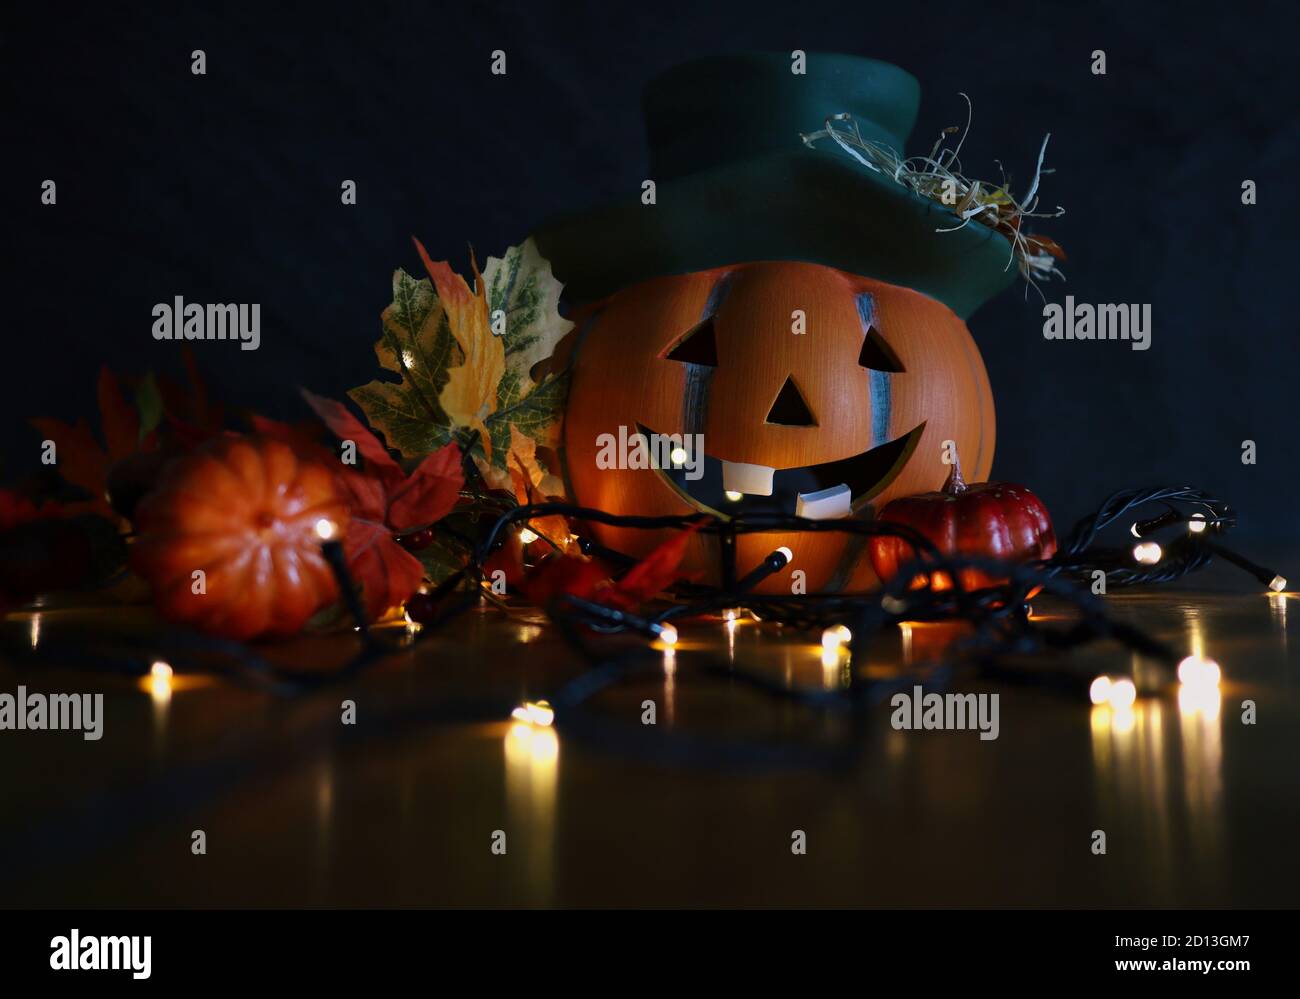 Keramik Halloween Orange Kürbis mit grünem Hut und Lächeln mit künstlichen Herbstblättern und blinkenden Lichtern. Moody Herbst und Halloween Vibes. Stockfoto